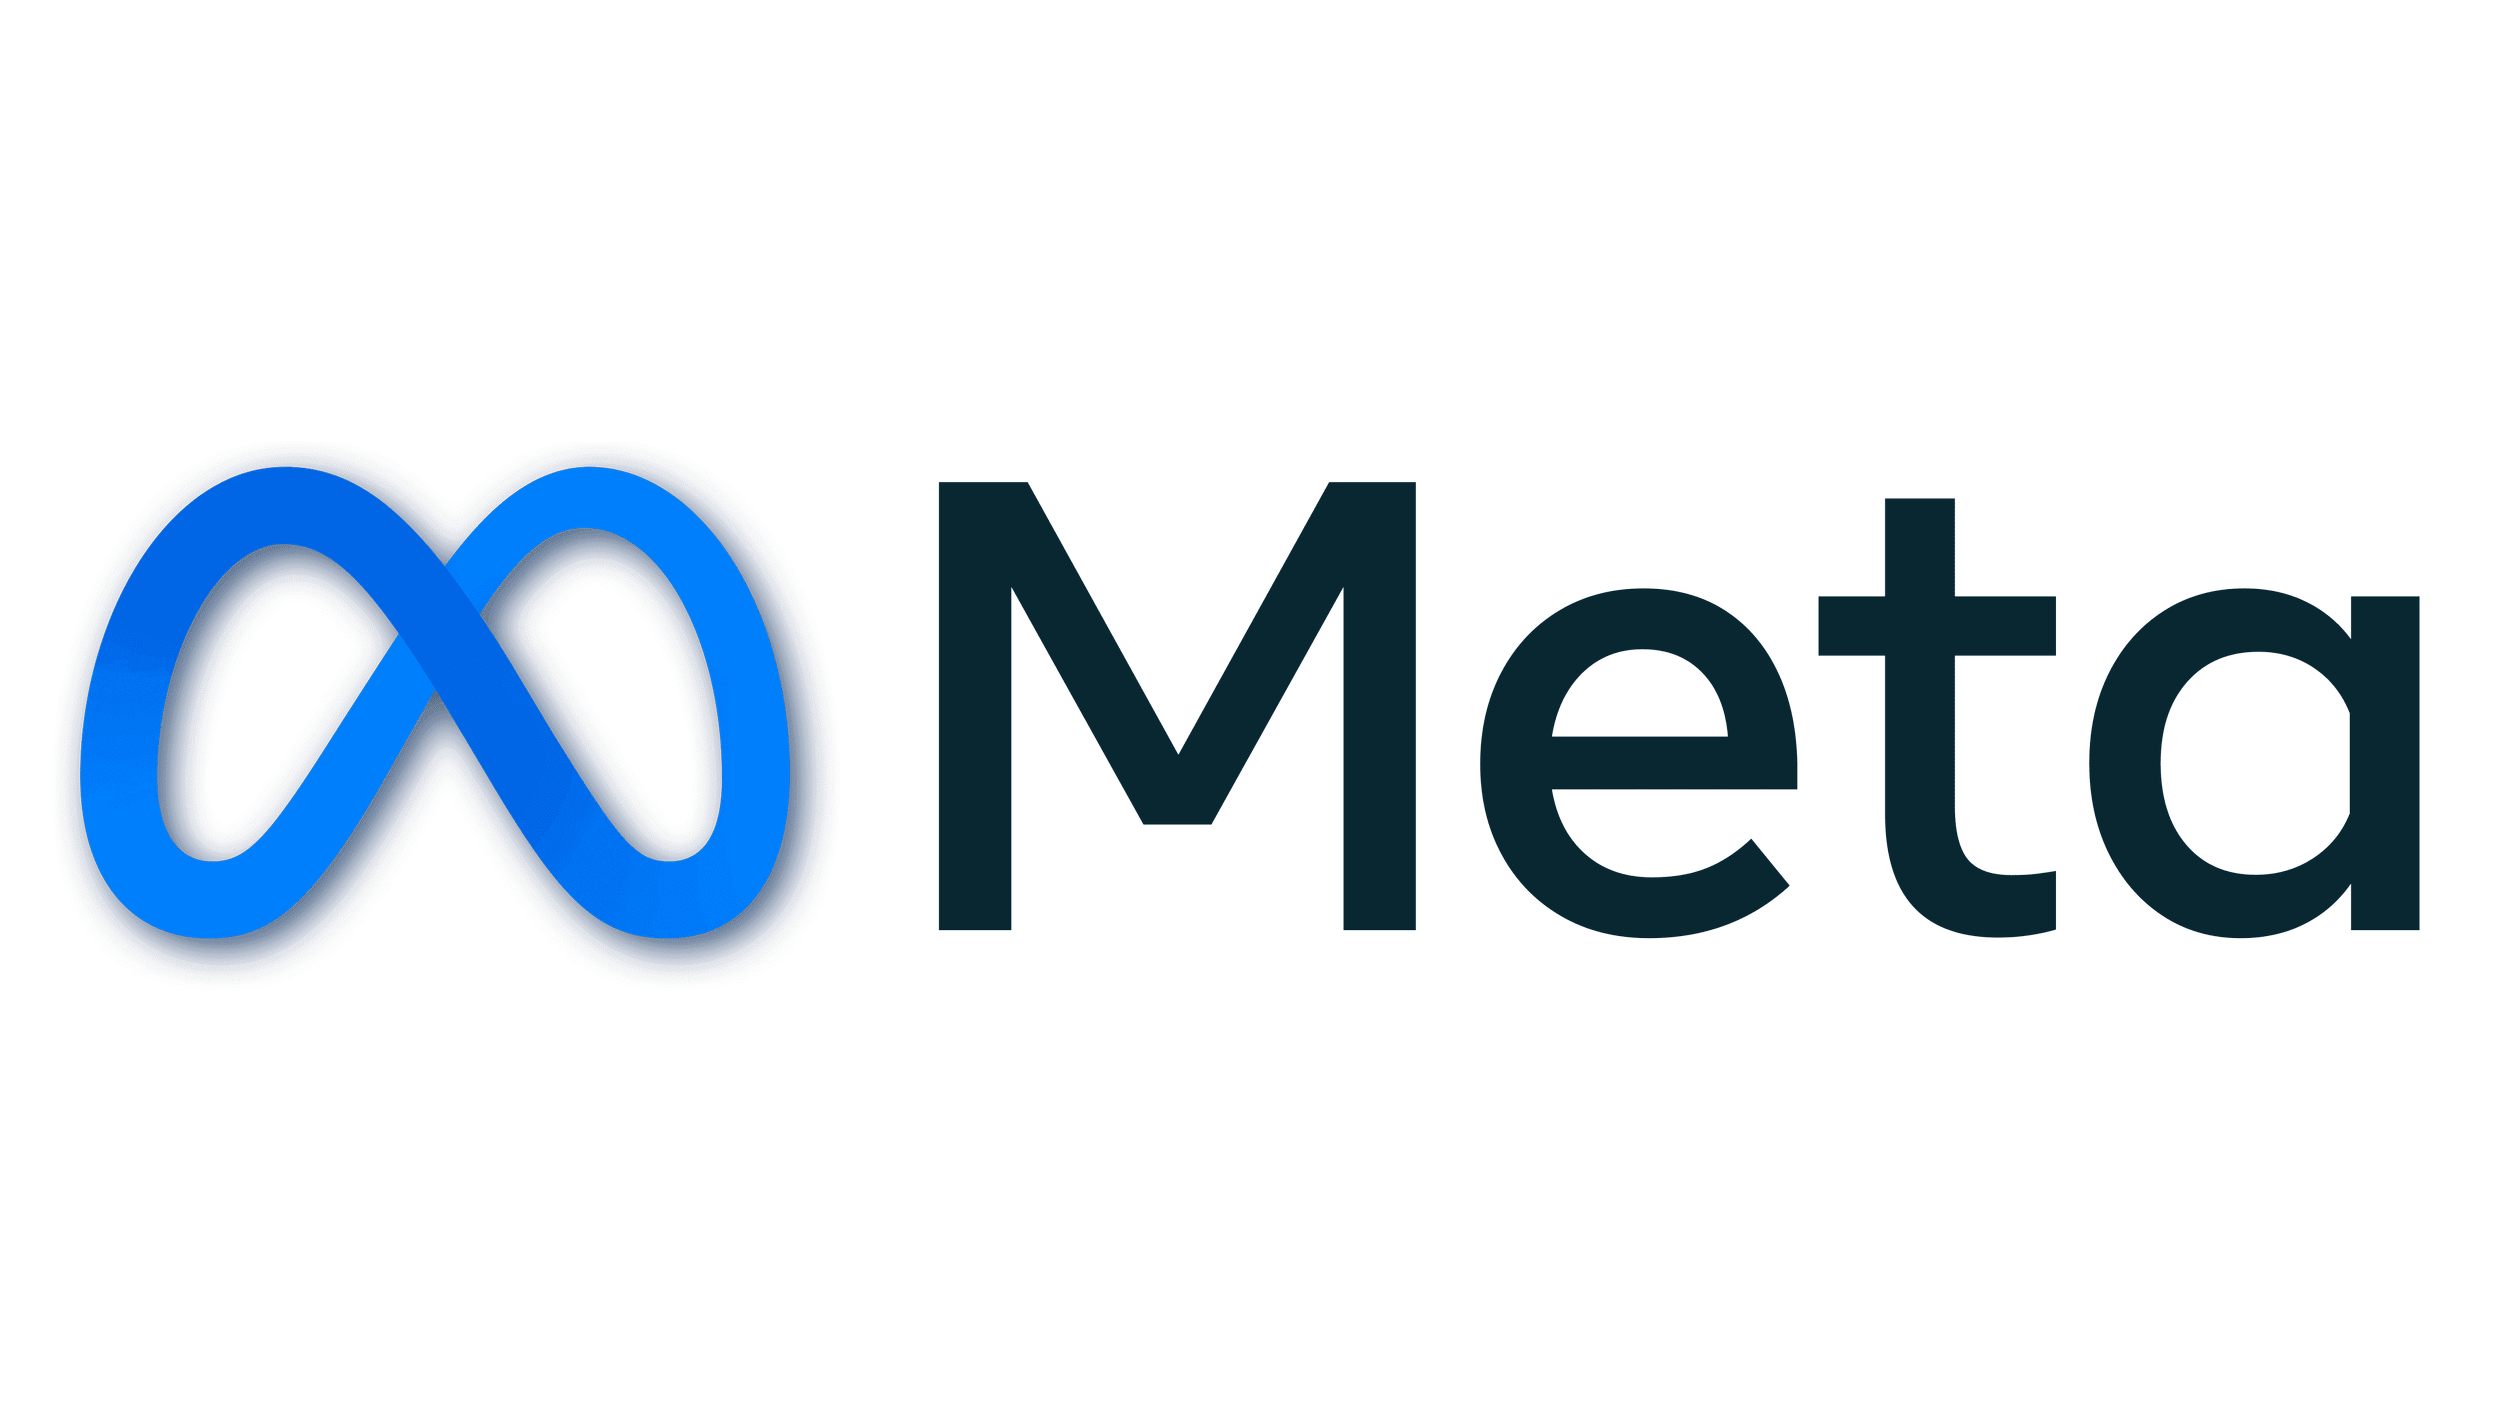 Meta logo.png